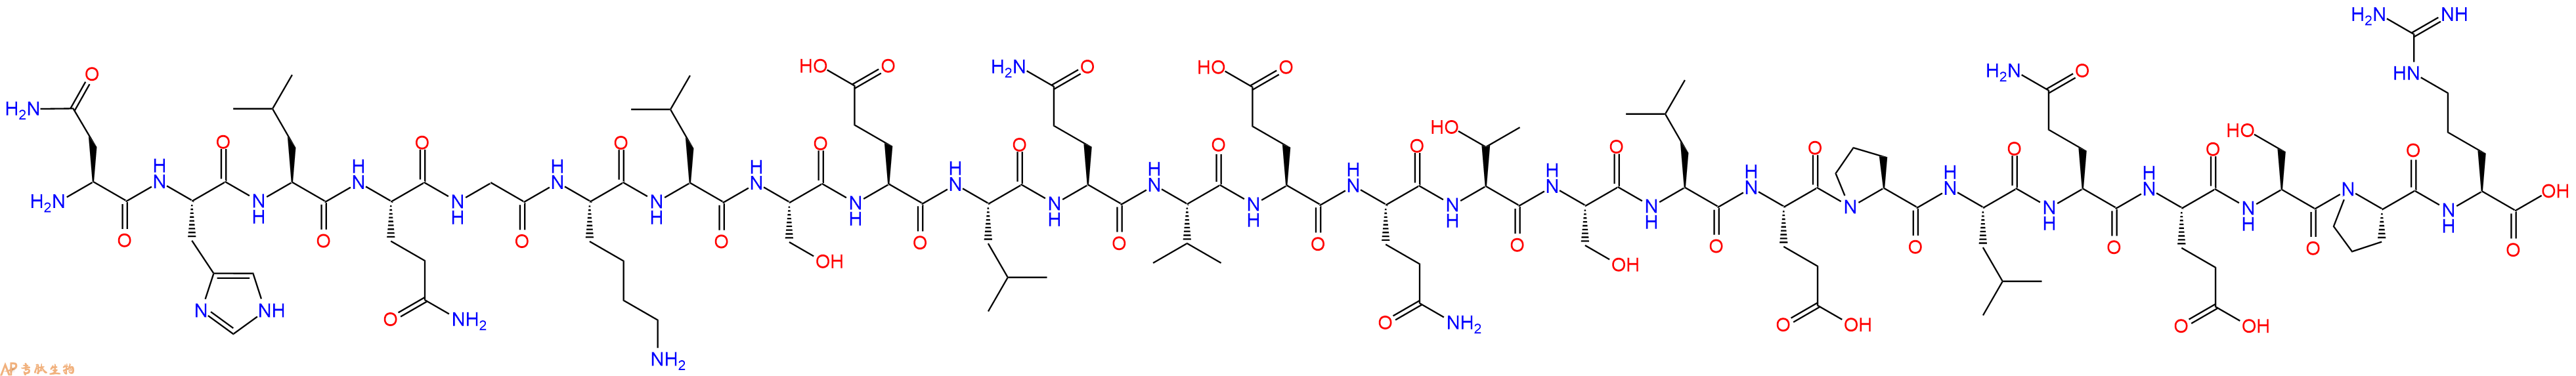 专肽生物产品BNP(22-46), Pro(Human)